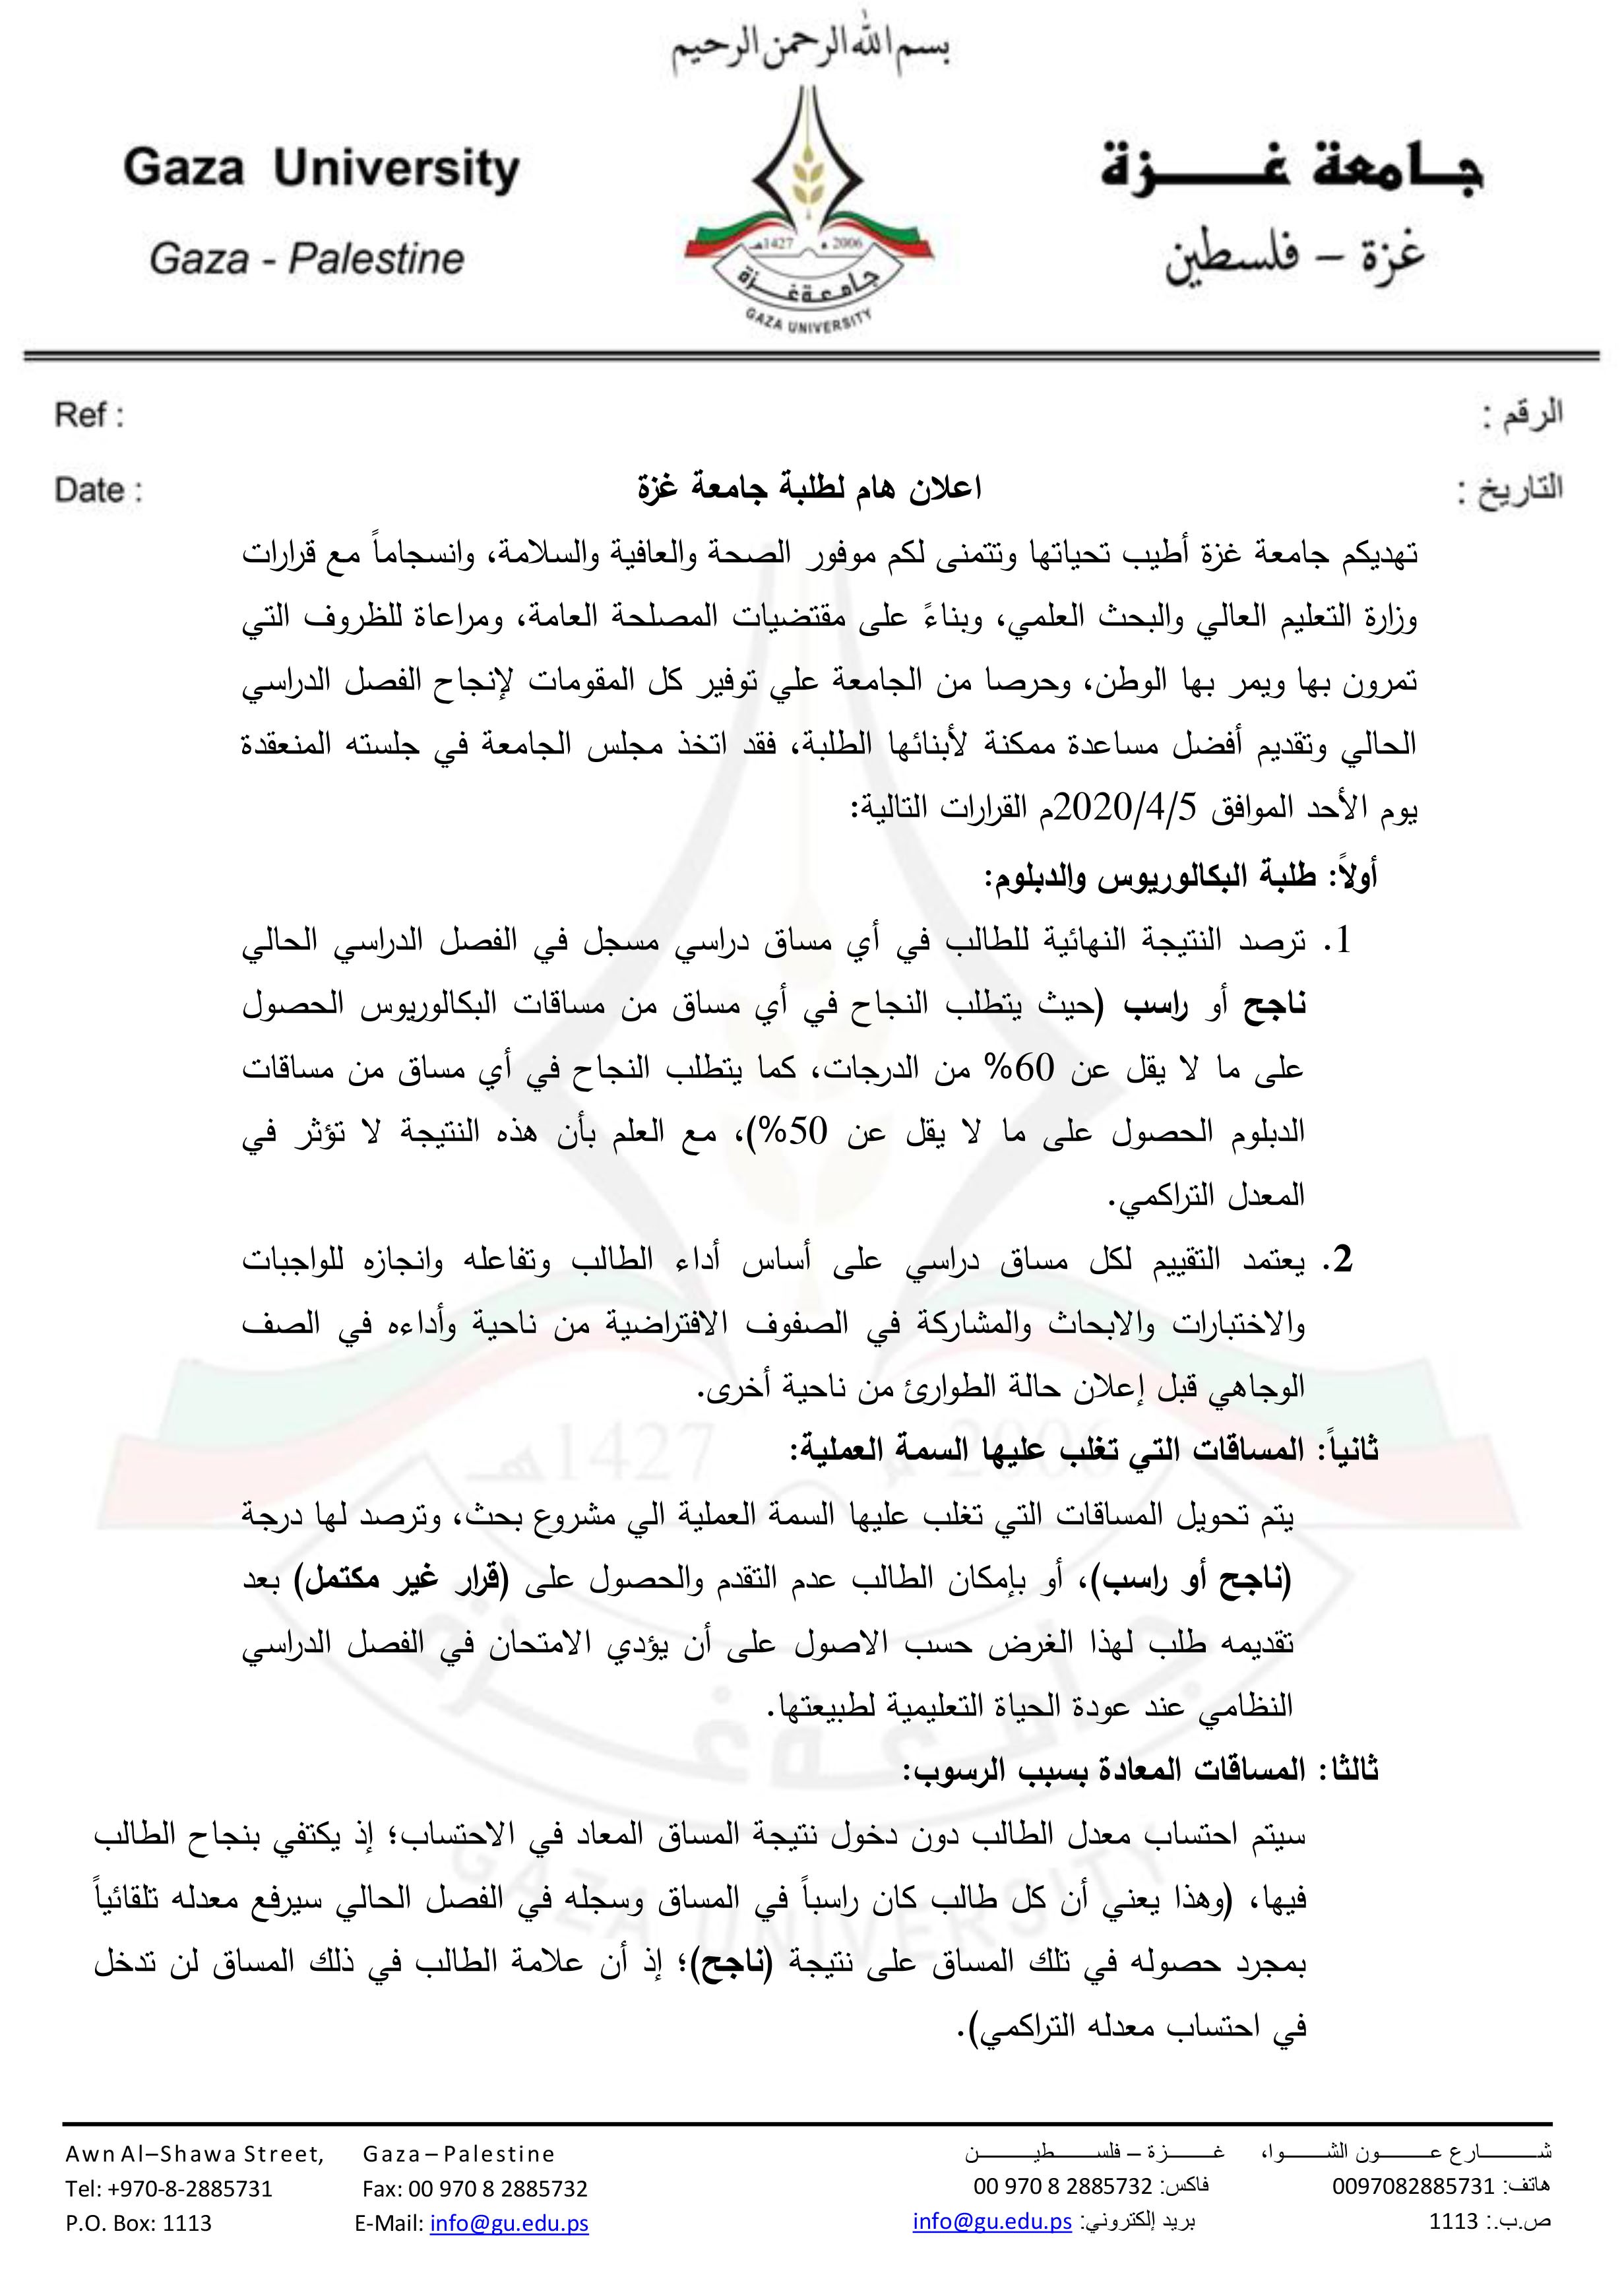 بيان جامعة غزة لطلابها بشان الفصل الدراسي الاول.jpg